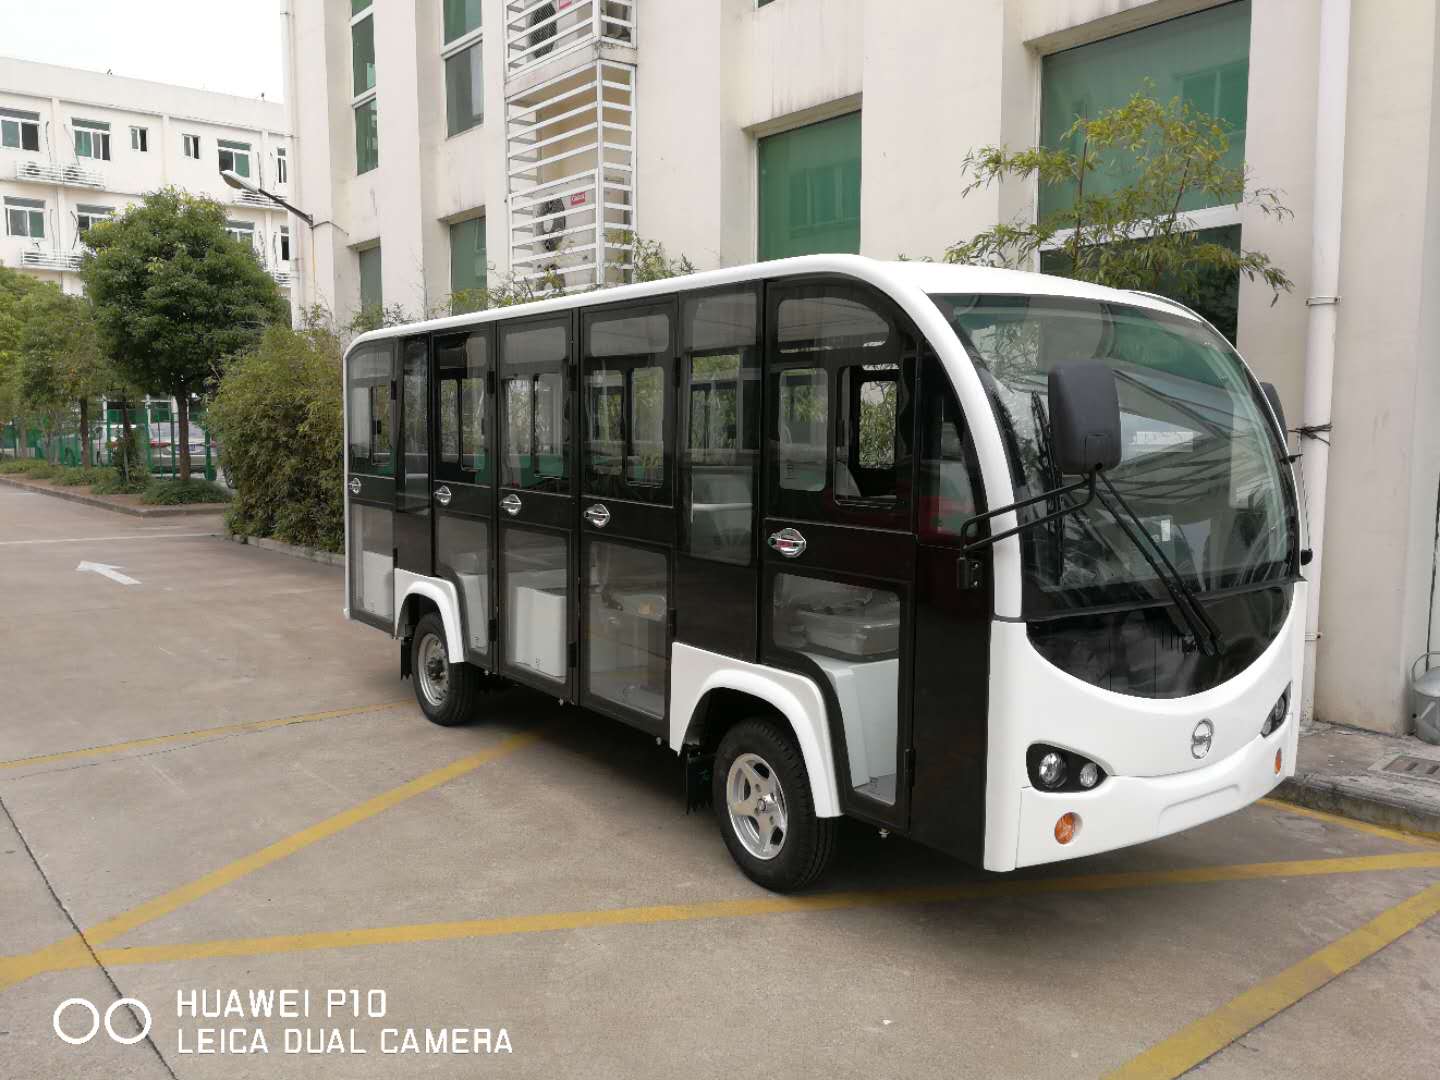 郑州景区运营观光车,纯电动节能无排